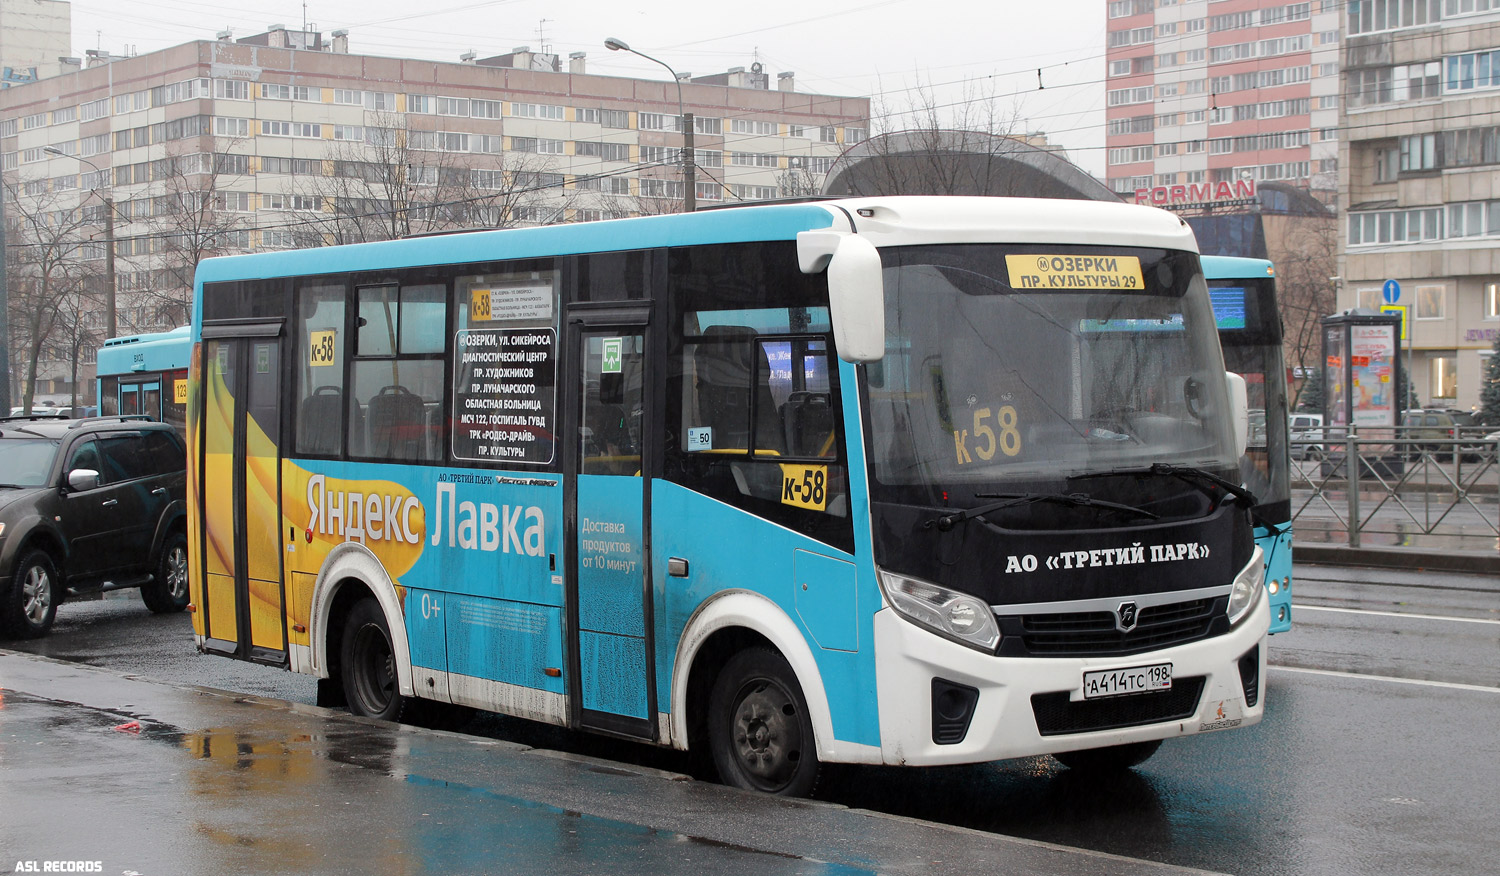 Szentpétervár, PAZ-320435-04 "Vector Next" sz.: А 414 ТС 198